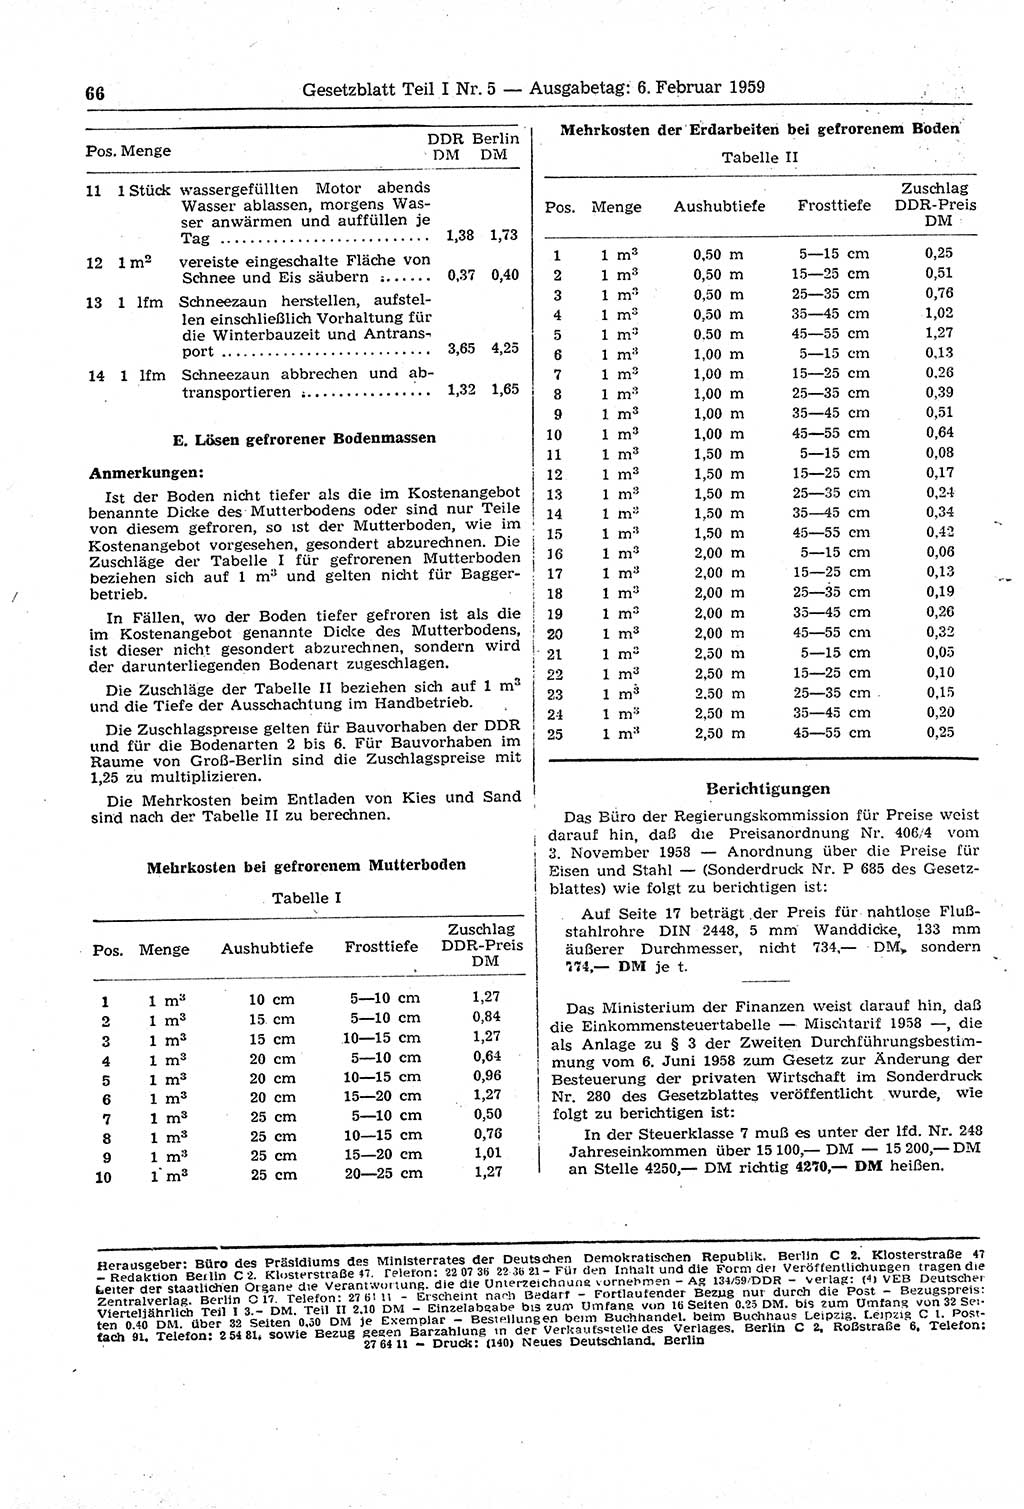 Gesetzblatt (GBl.) der Deutschen Demokratischen Republik (DDR) Teil Ⅰ 1959, Seite 66 (GBl. DDR Ⅰ 1959, S. 66)